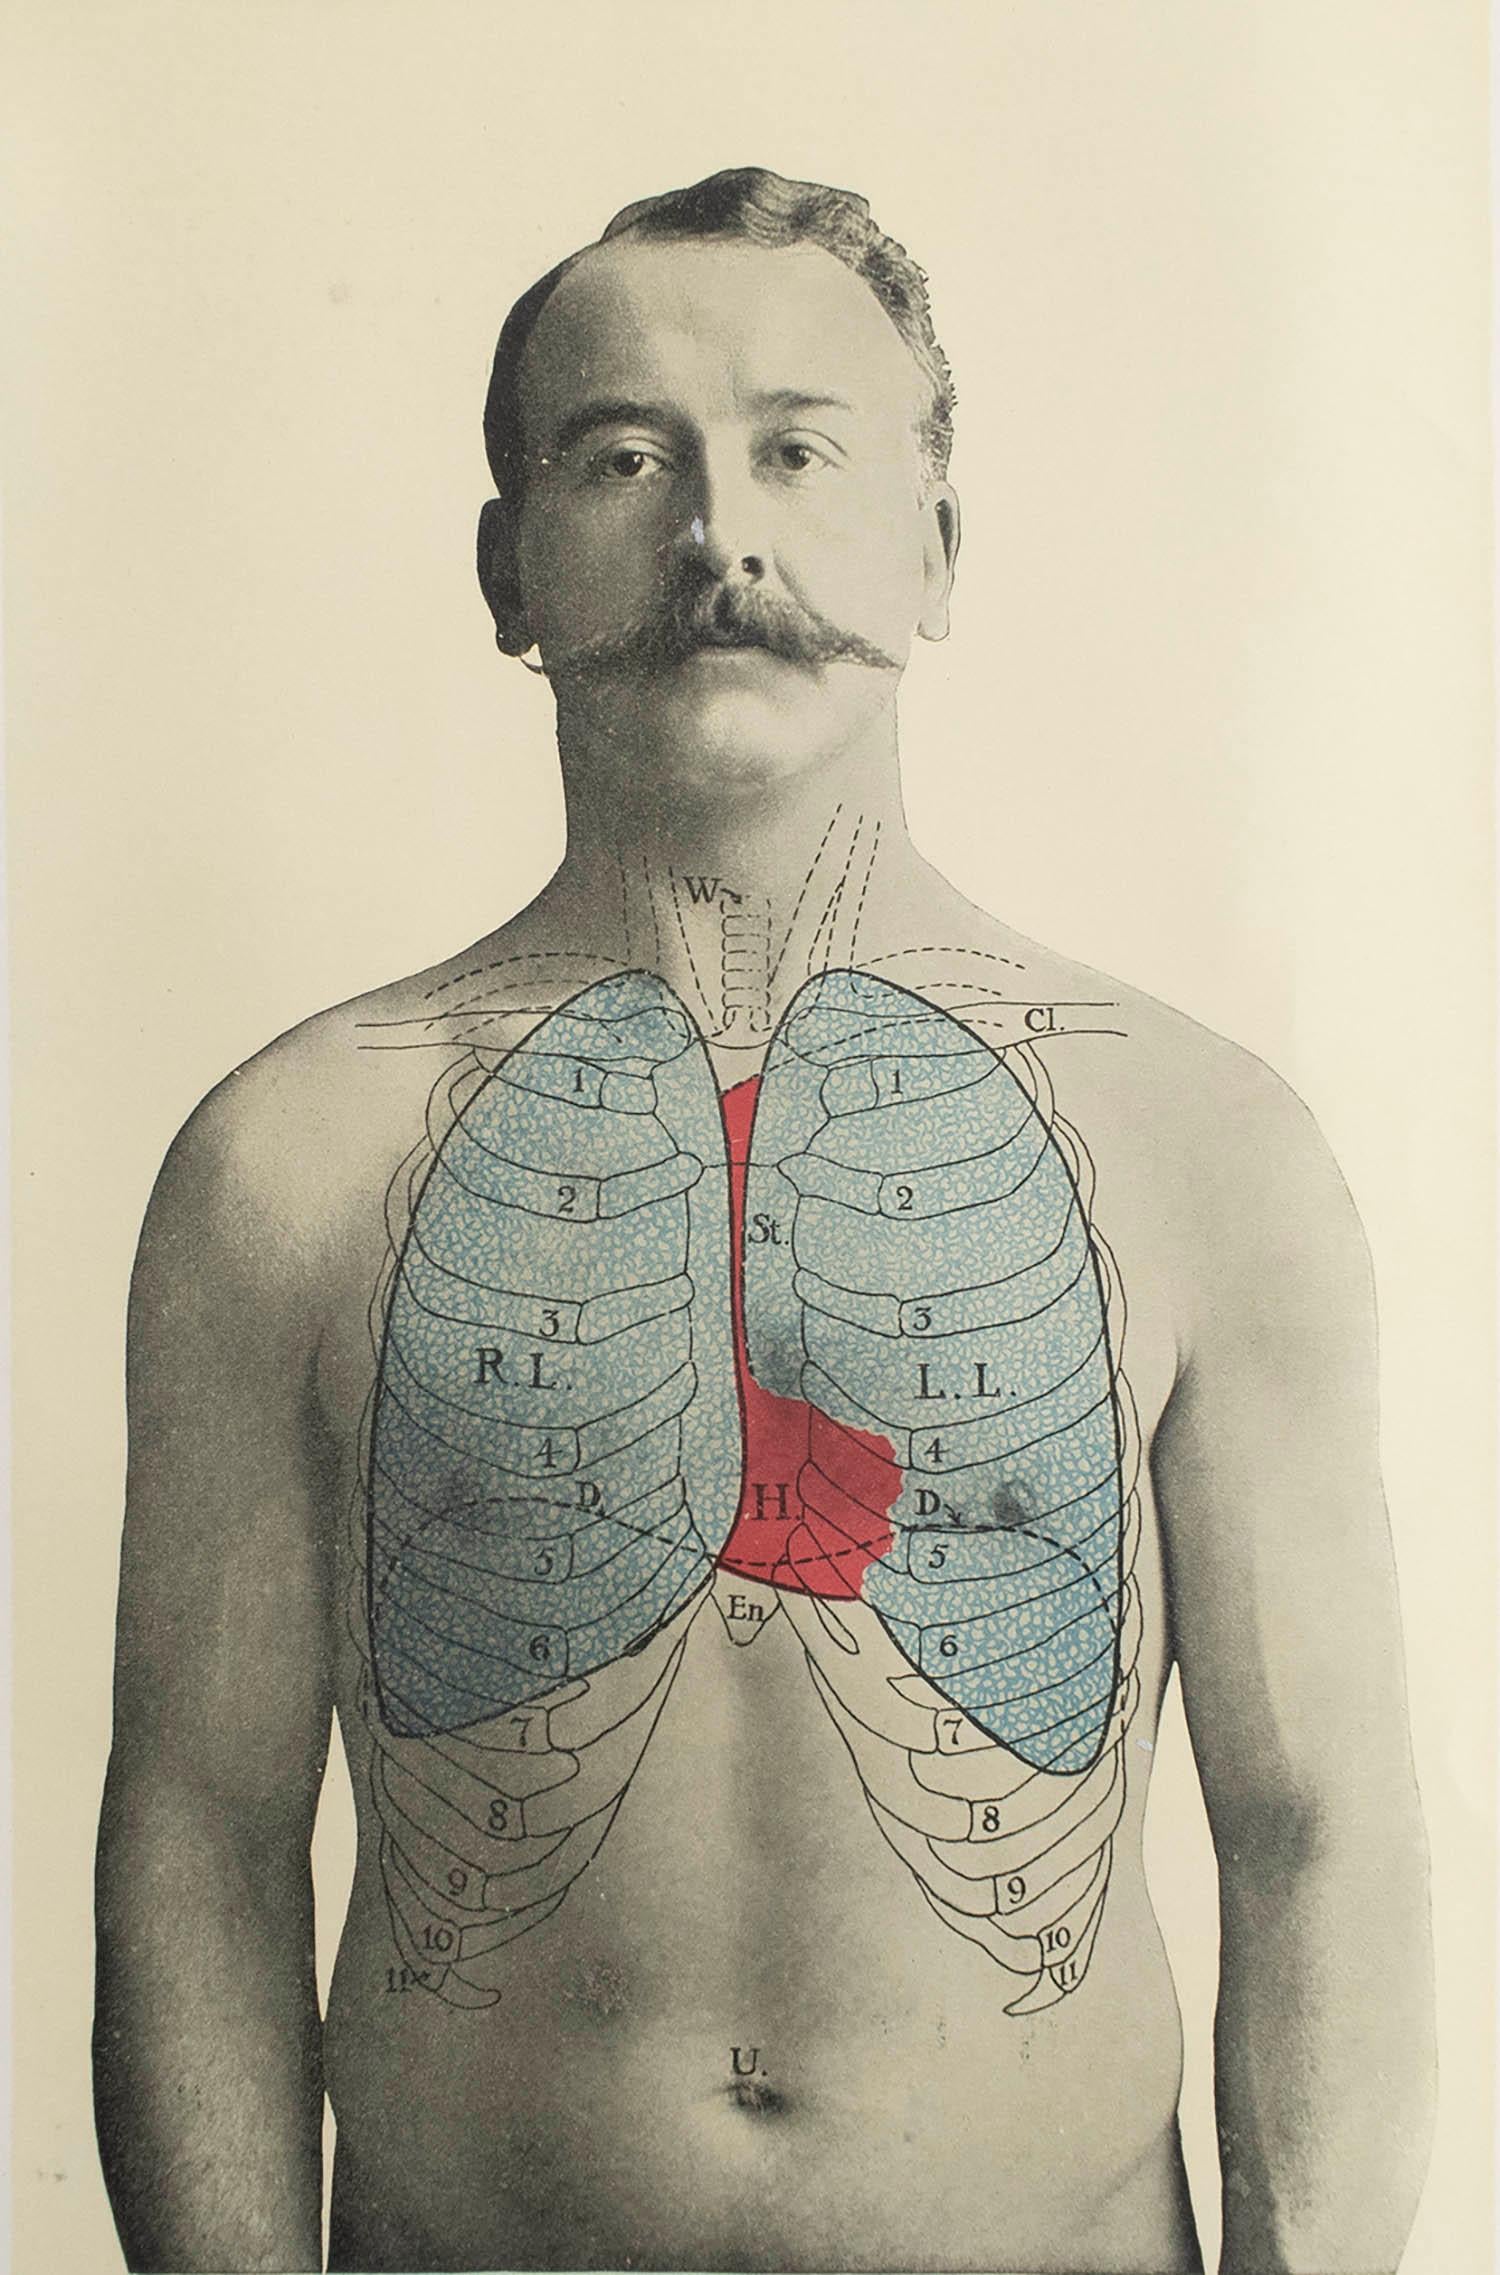 Großartiges Bild von medizinischem Interesse.

Ungerahmt.

Veröffentlicht, um 1900.





